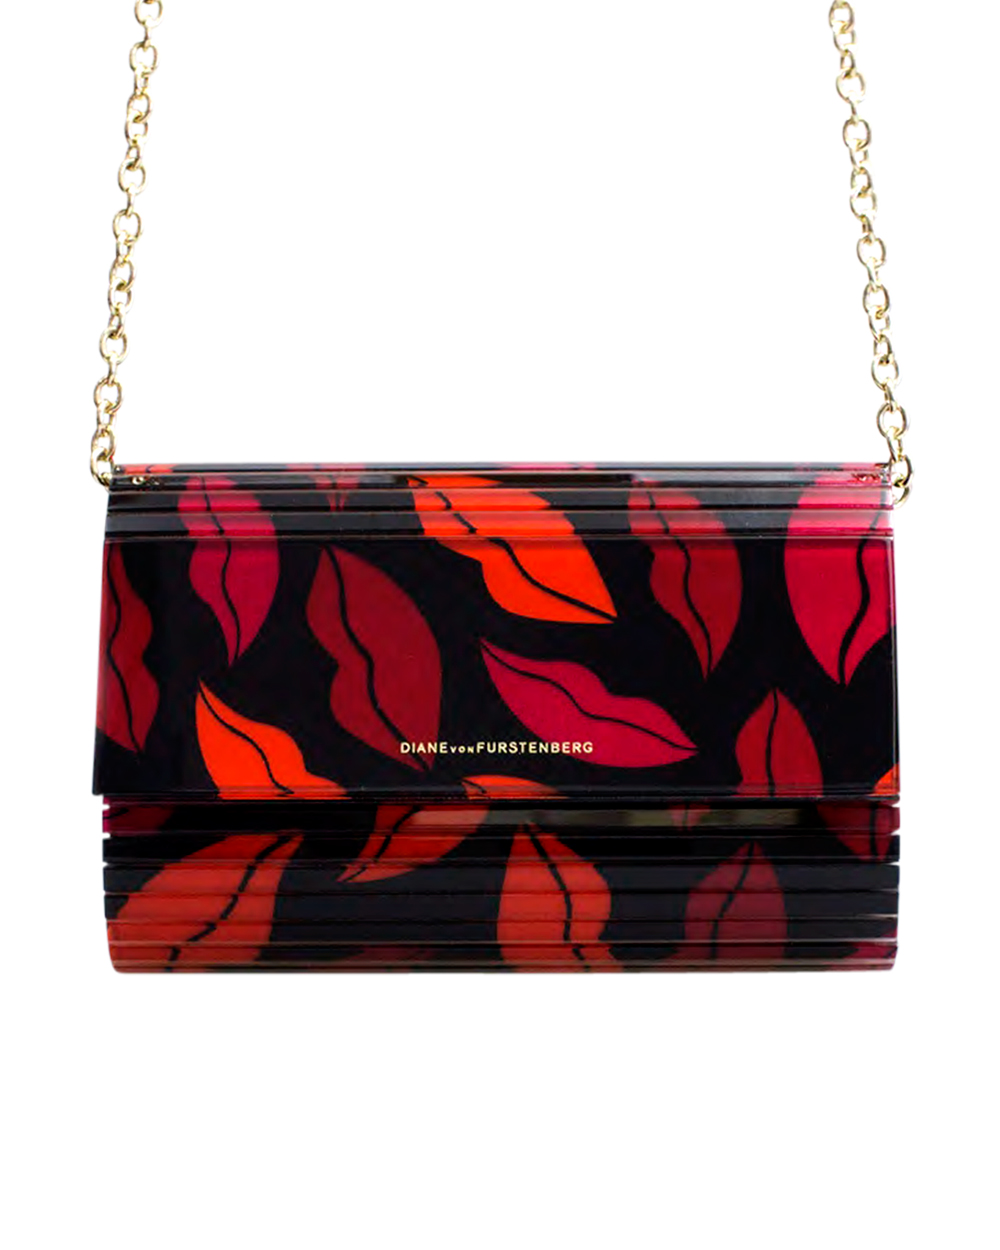 Diane von Furstenberg bag, $490, from Runway Shoes